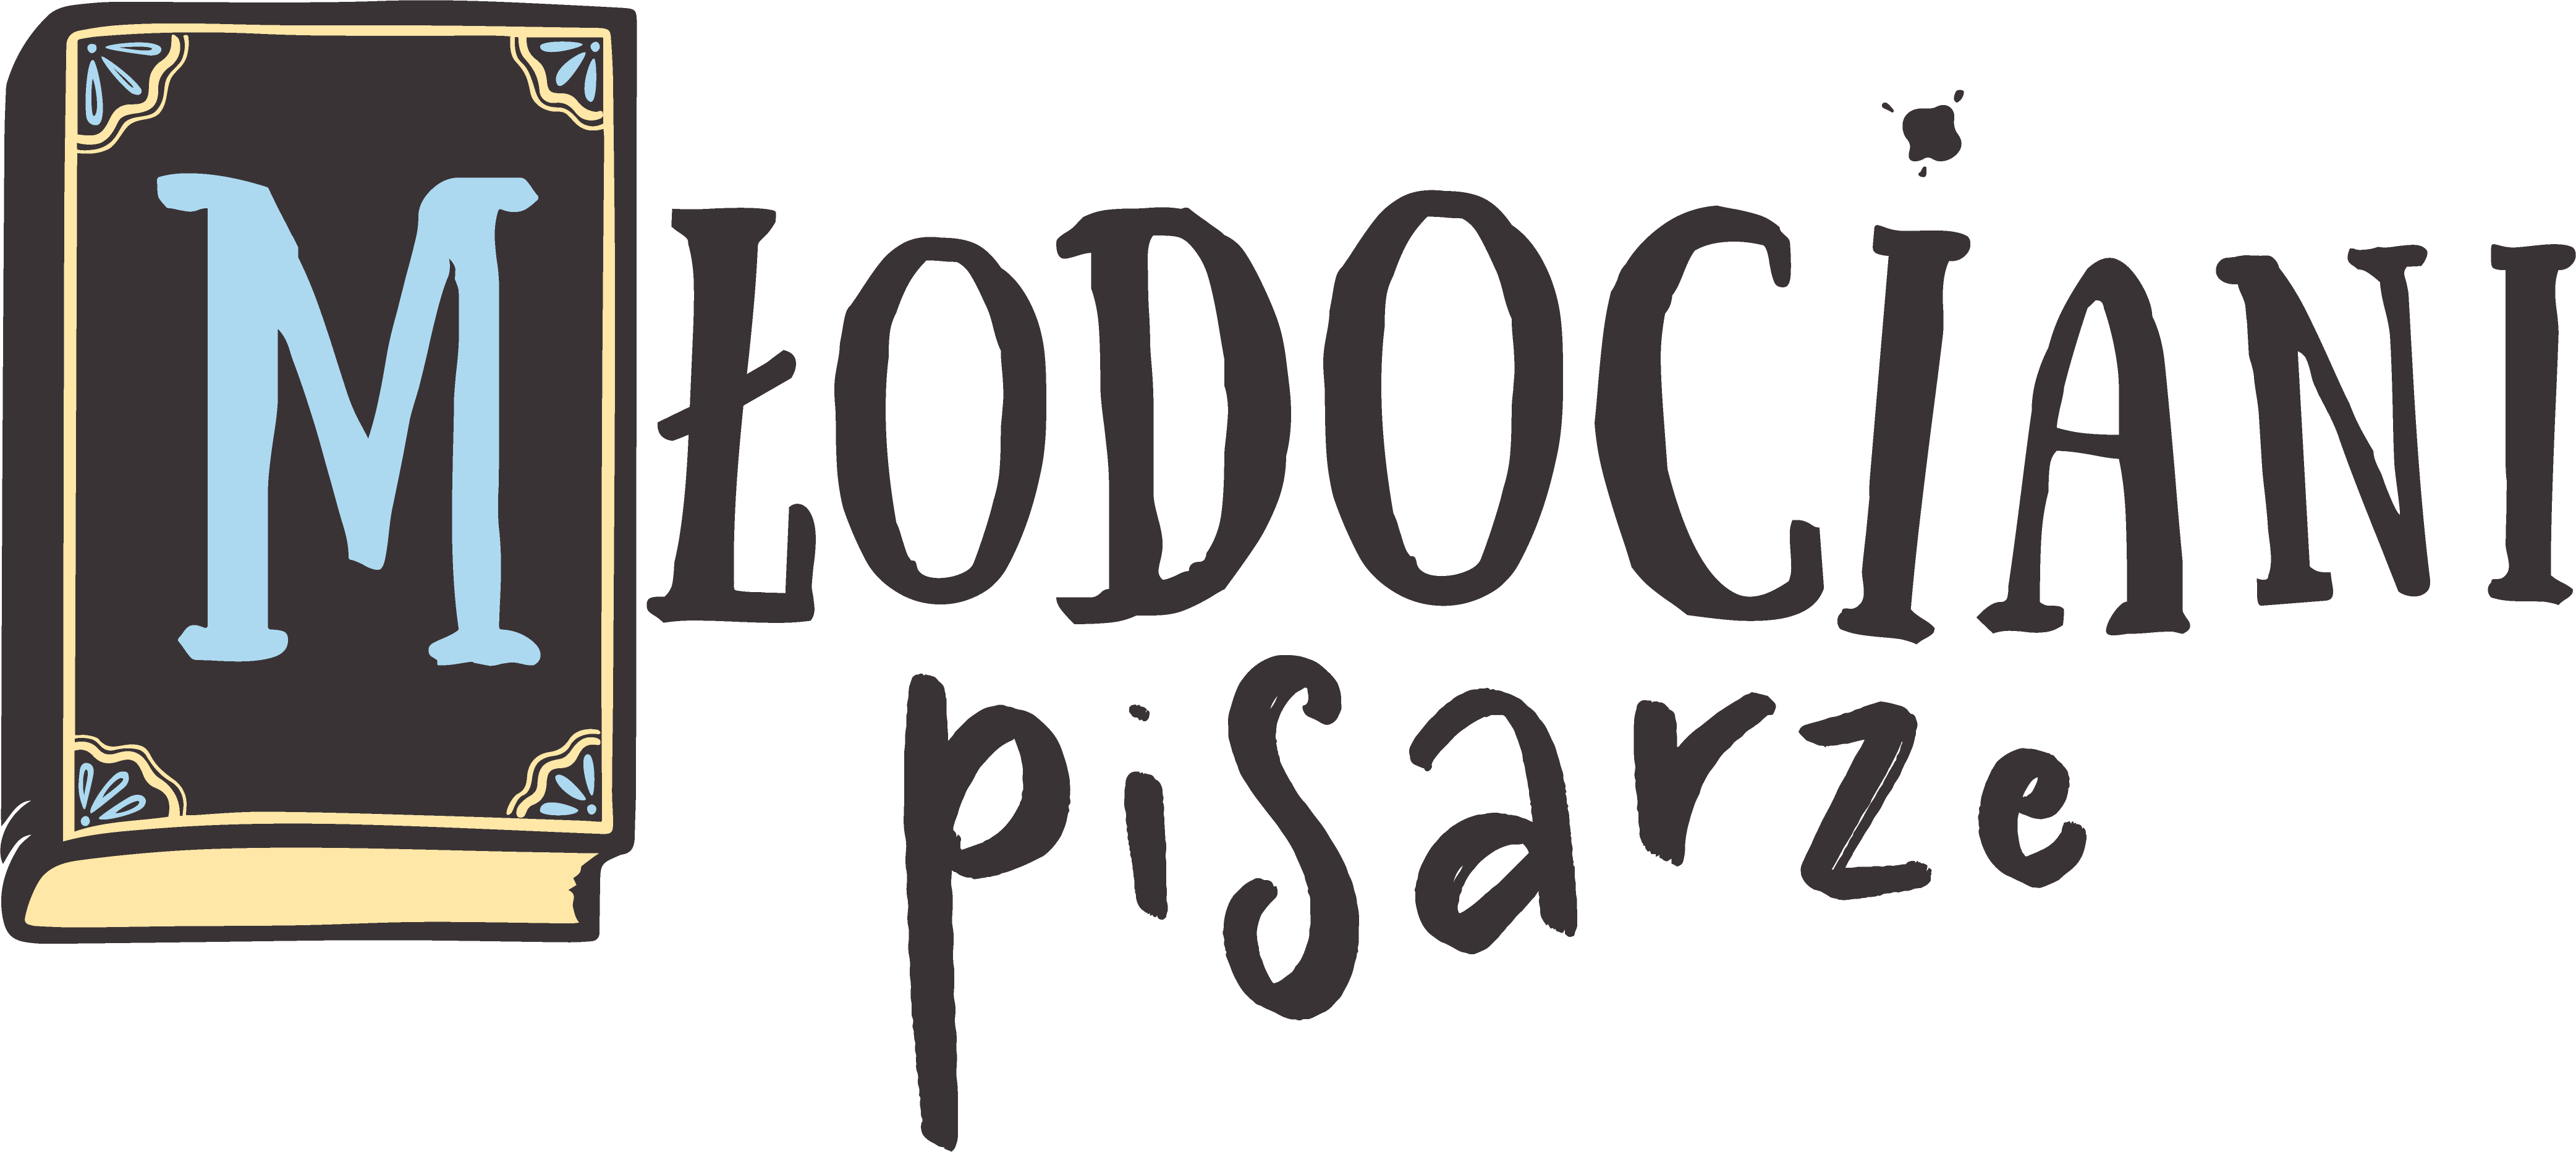 Logo konkursu literackiego dla dzieci Młodociani pisarze